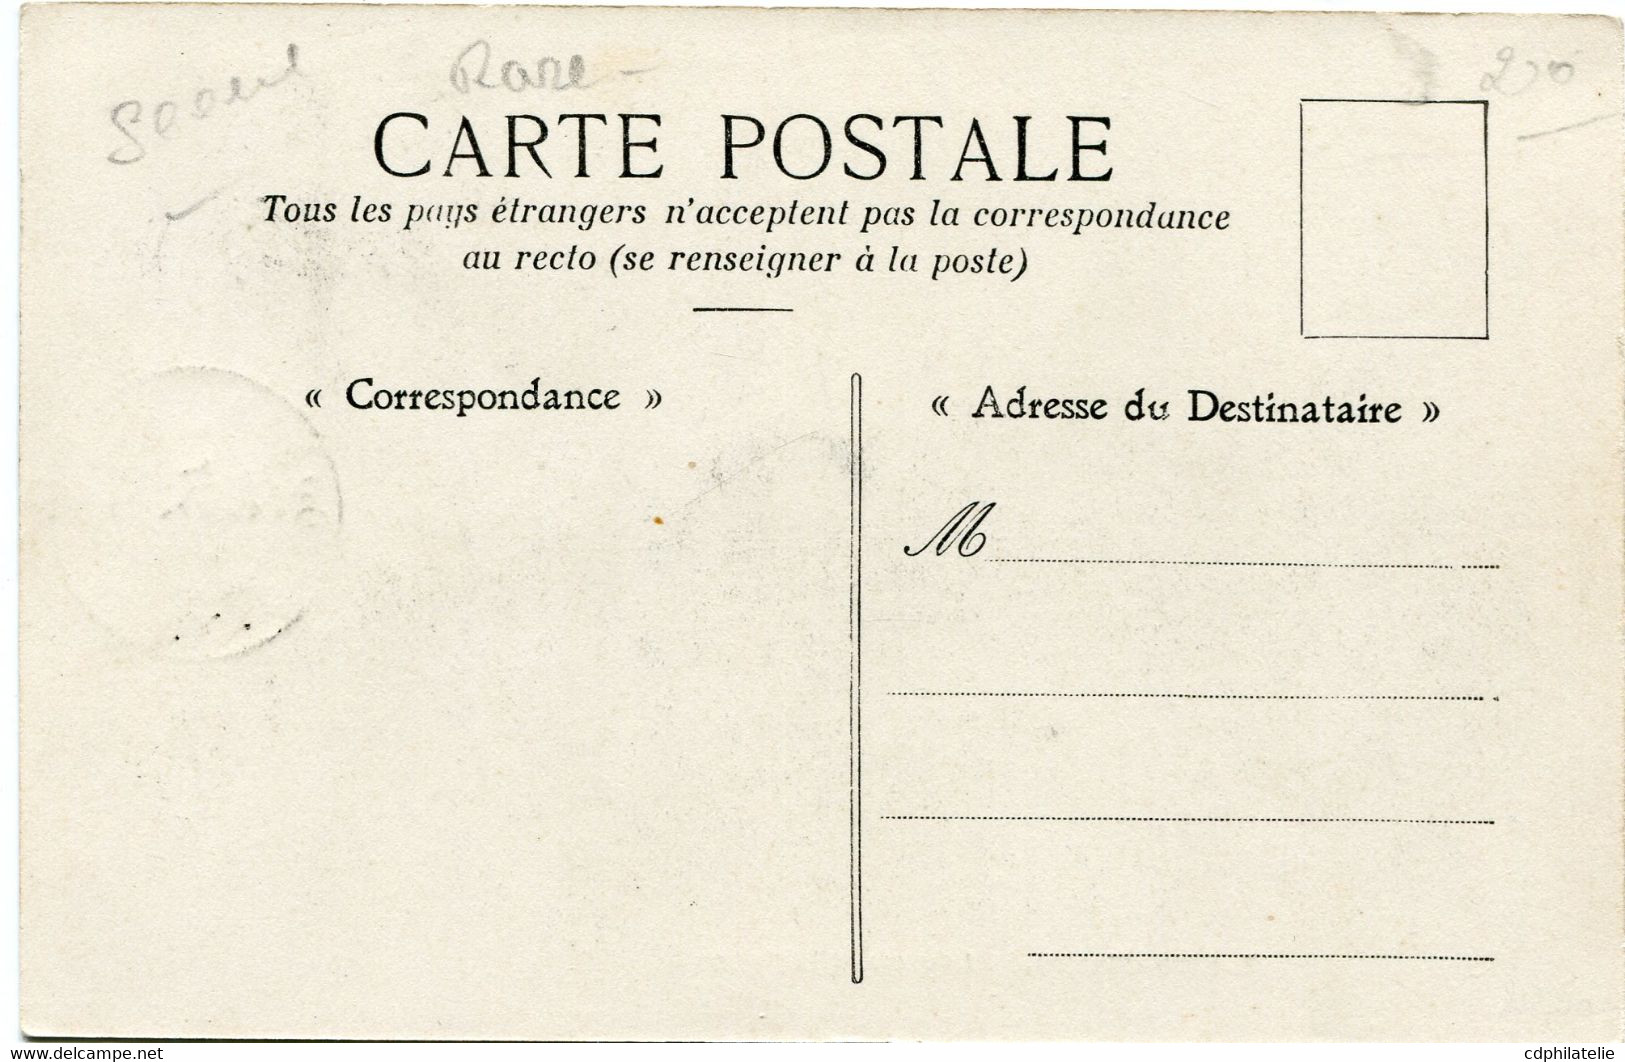 COTE D'IVOIRE CARTE POSTALE -LAVEMENT INDIGENE AVEC OBLITERATION ABIDJAN 25 AOUT 07 COTE D'IVOIRE - Lettres & Documents